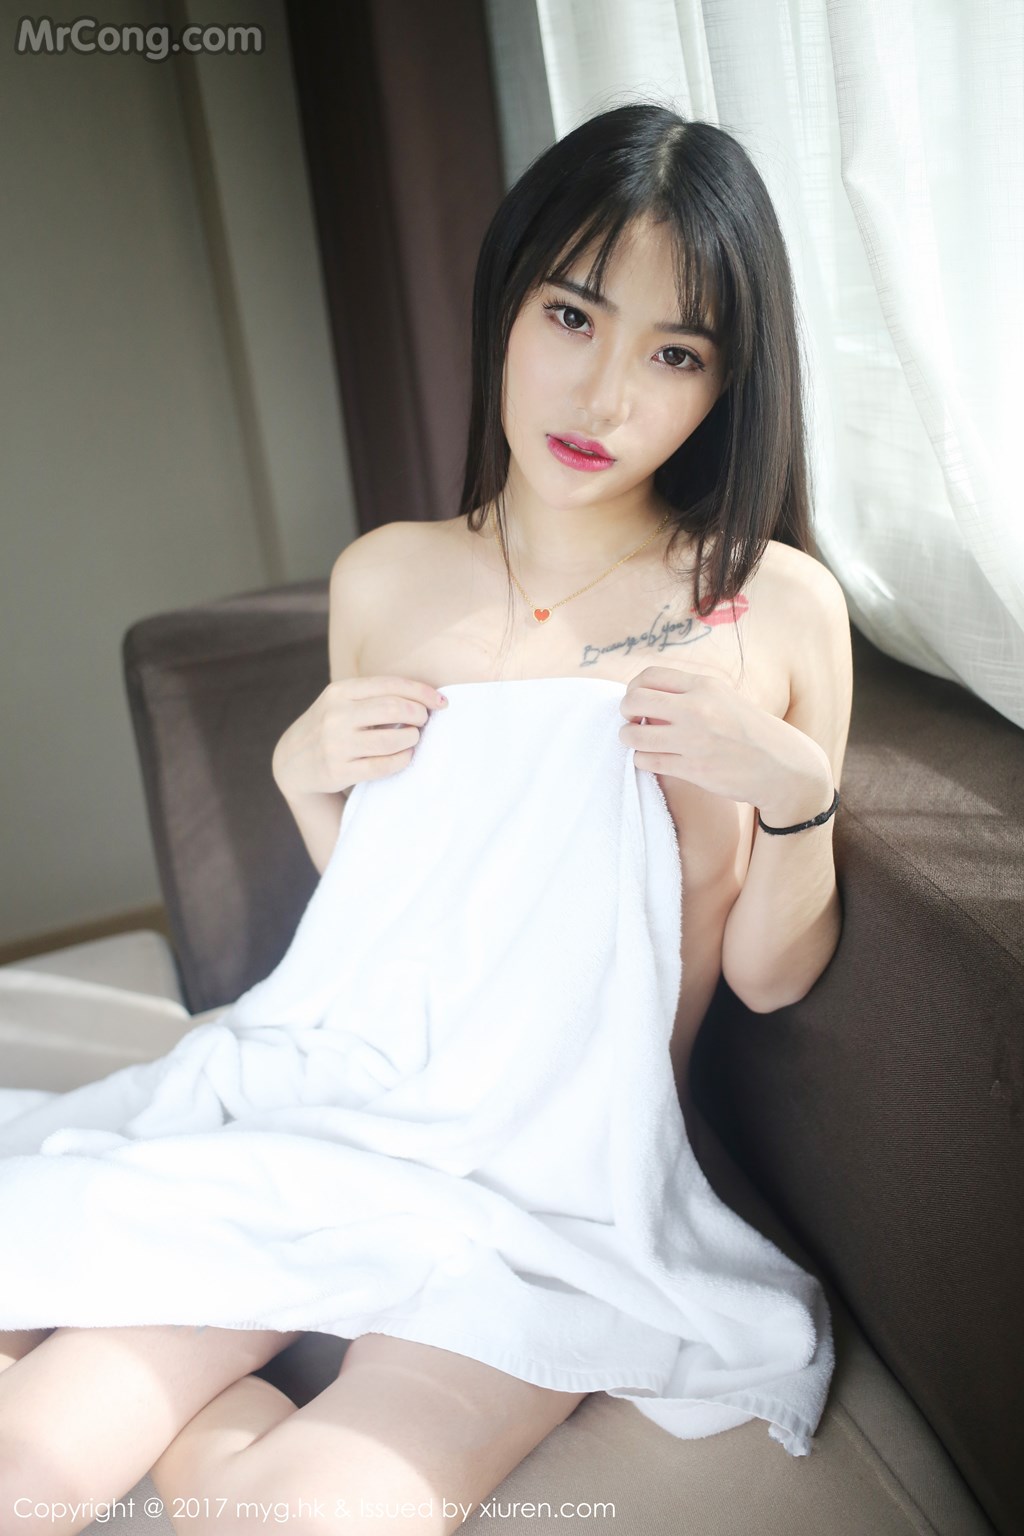 MyGirl Vol. 522: Model Yang Jie (杨洁 linda) (42 photos)